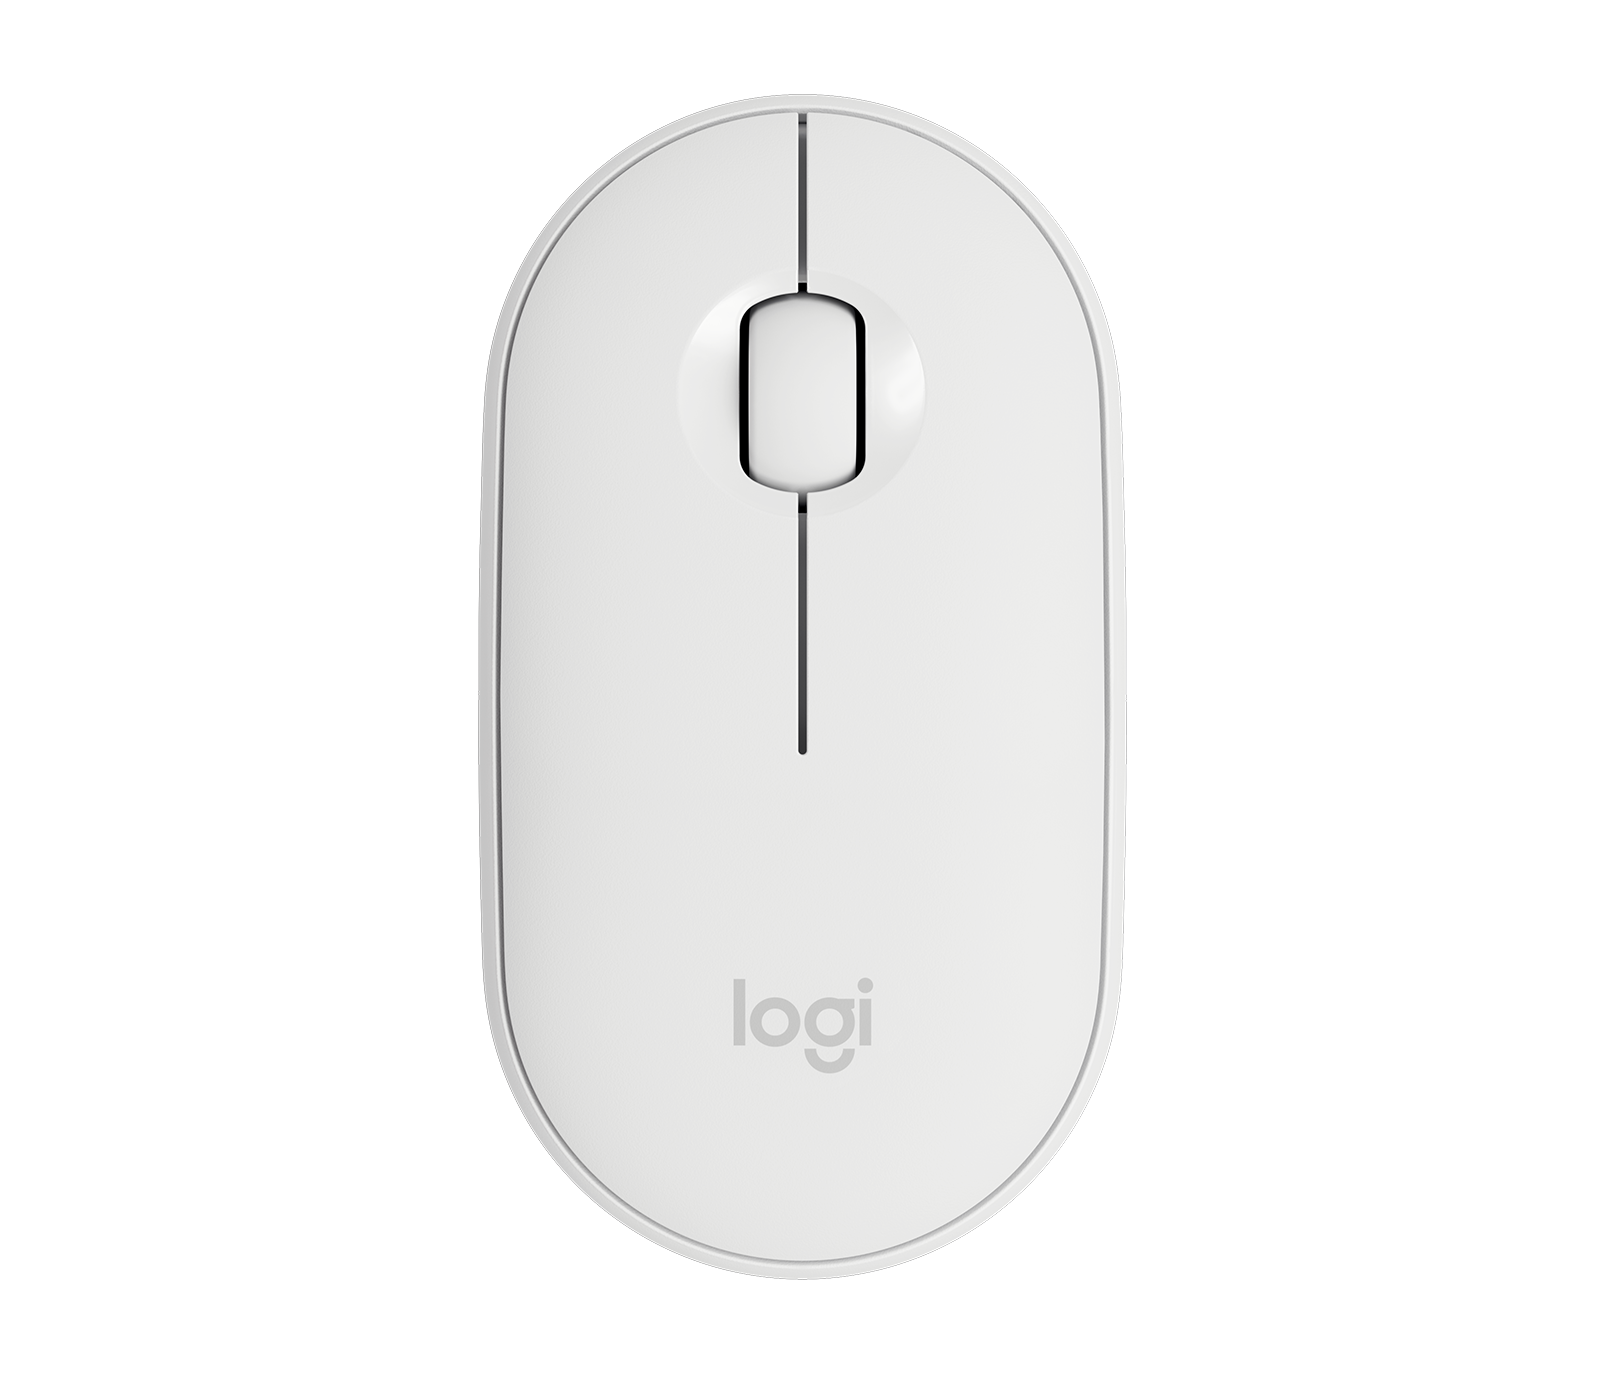 Logitech K380 M350 Wireless Keyboard And Mouse Combo